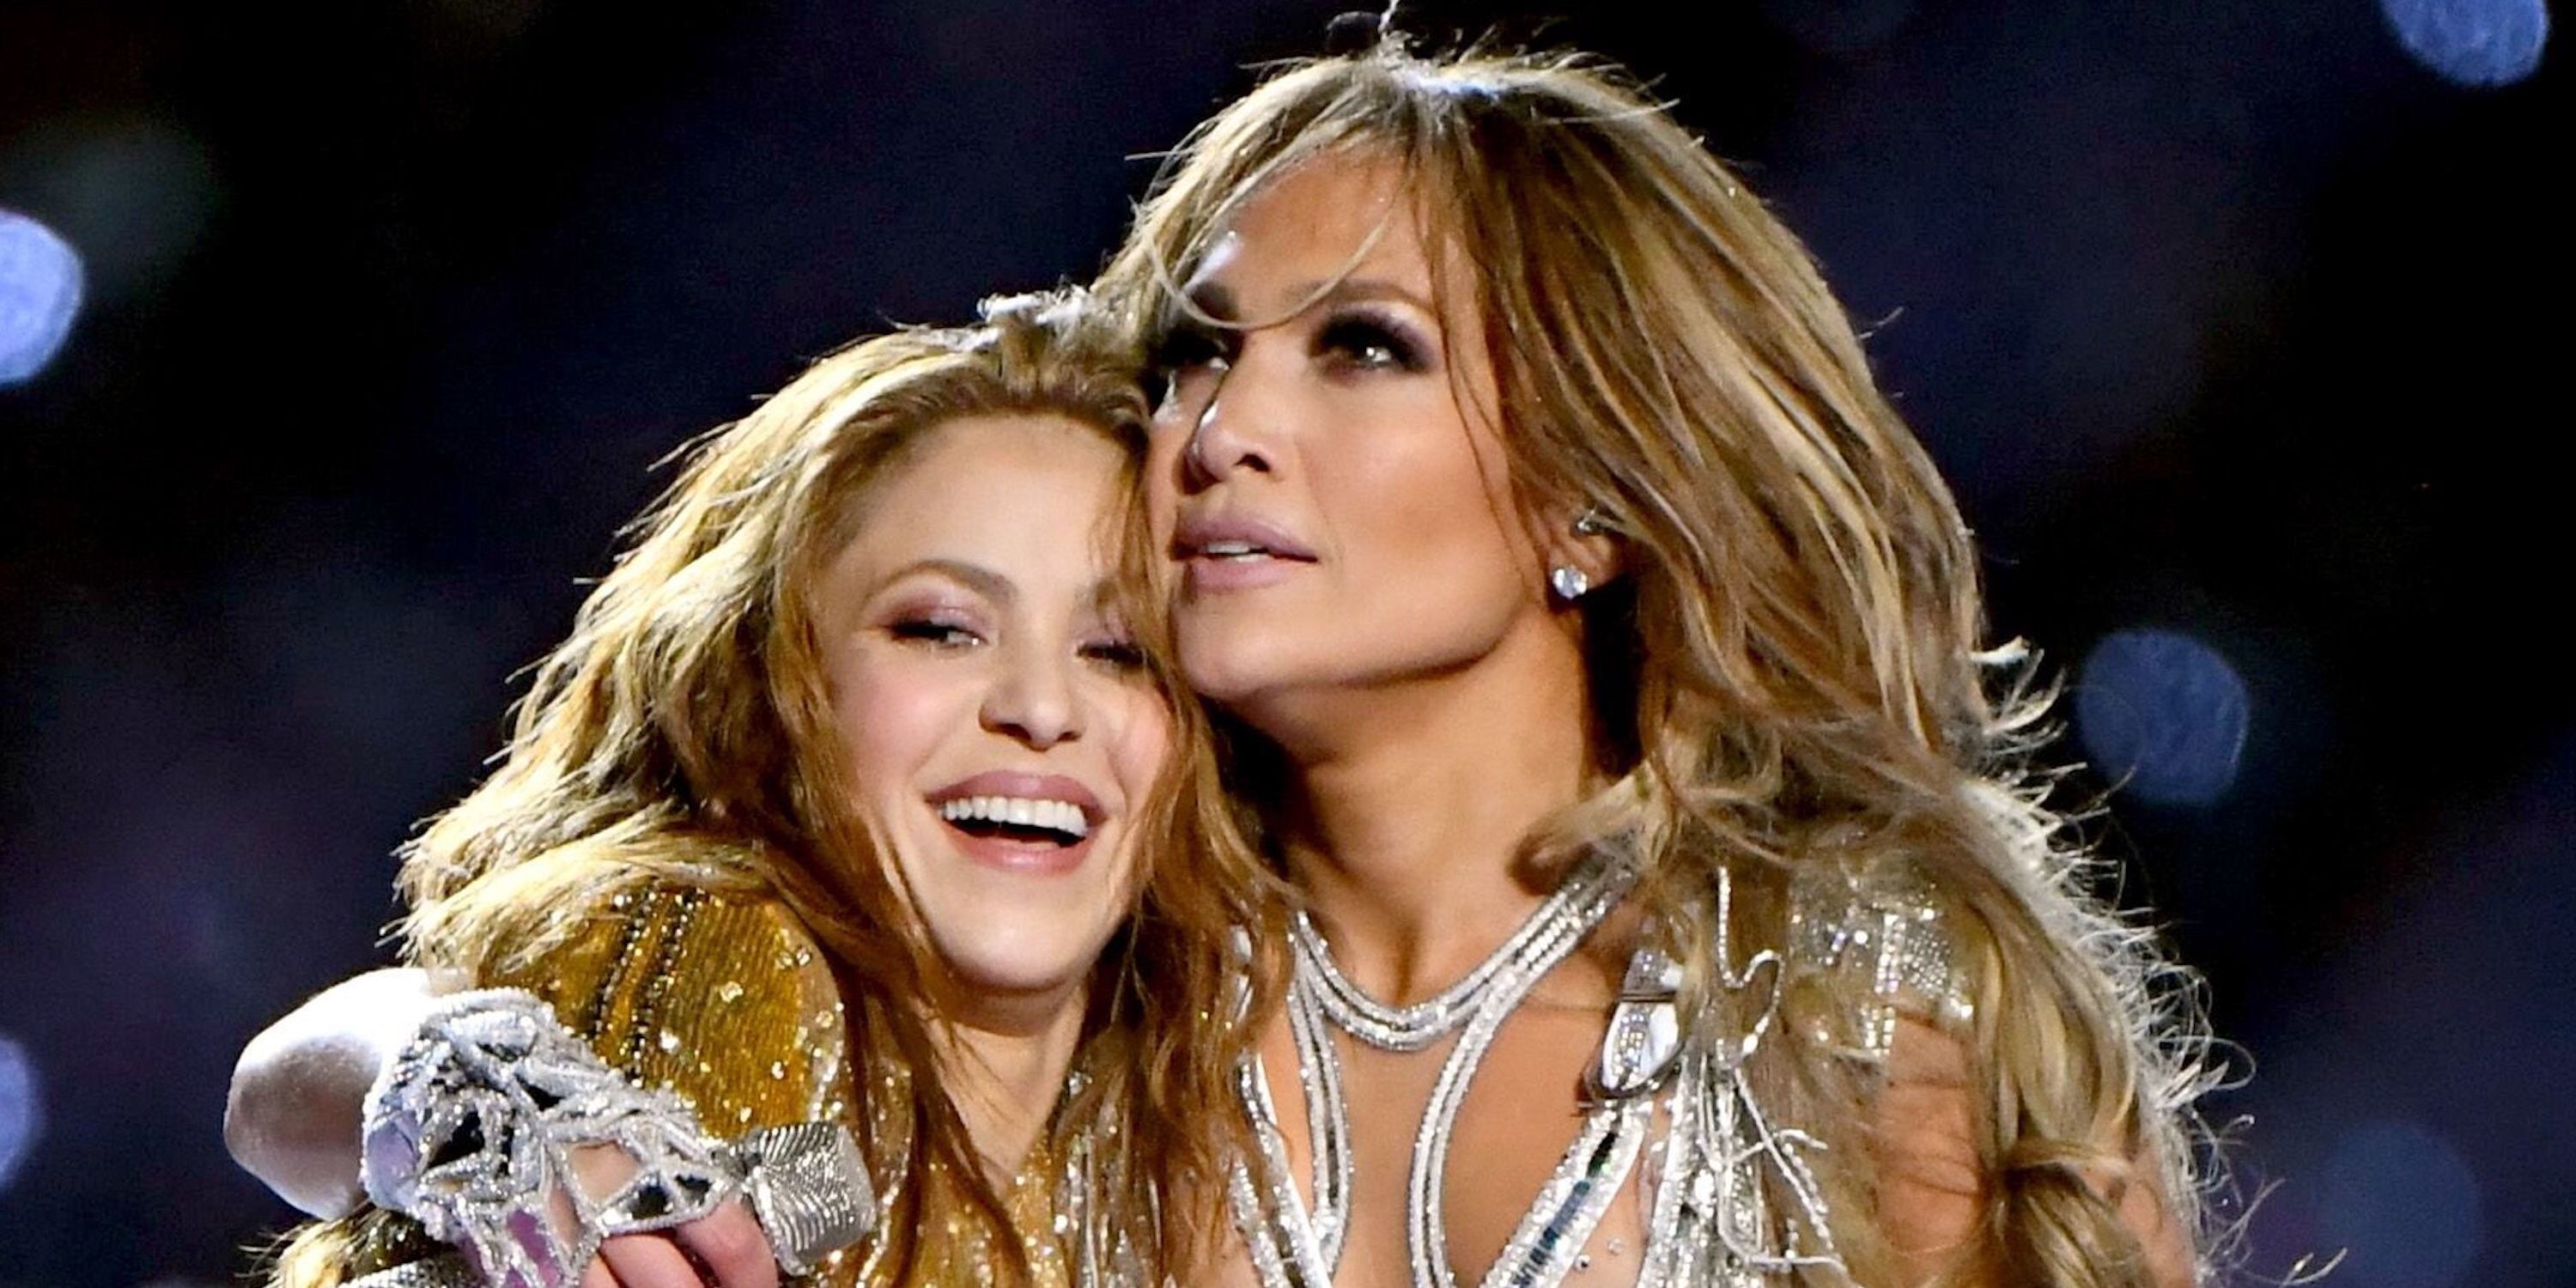 ¡Fin de la guerra! El emotivo momento entre Jennifer Lopez y Shakira que no se vio en televisión